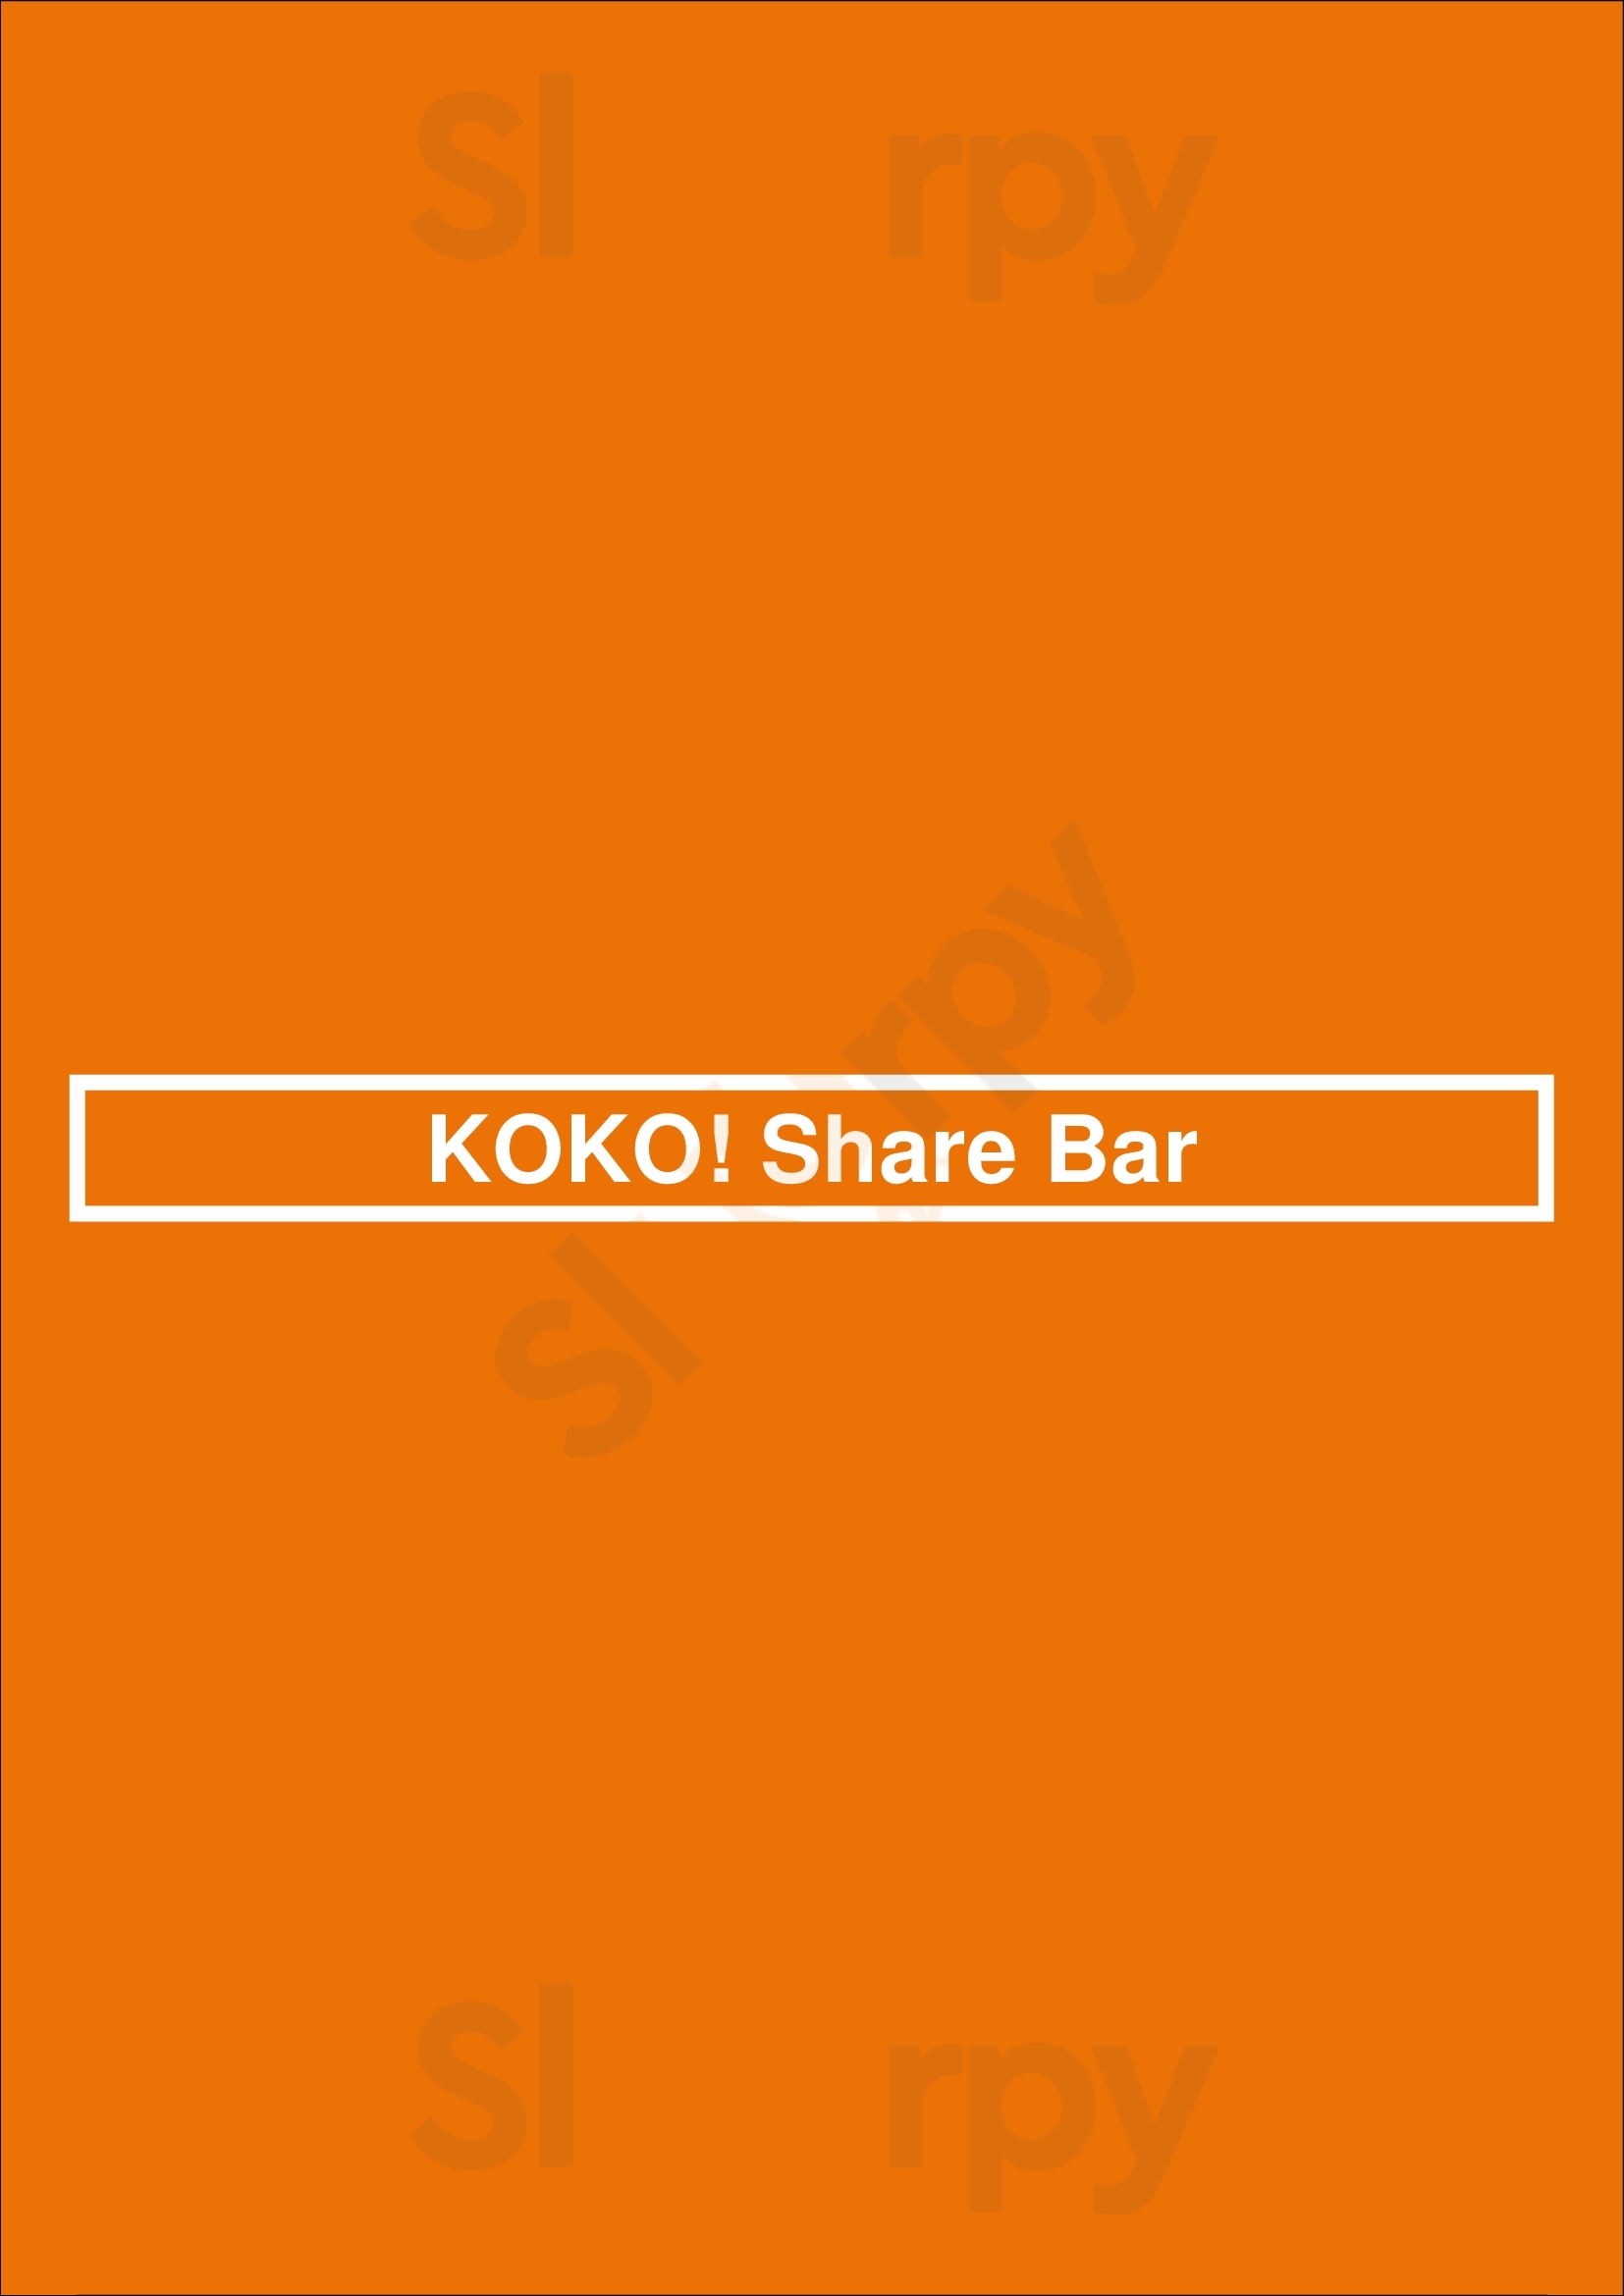 Koko! Share Bar Toronto Menu - 1